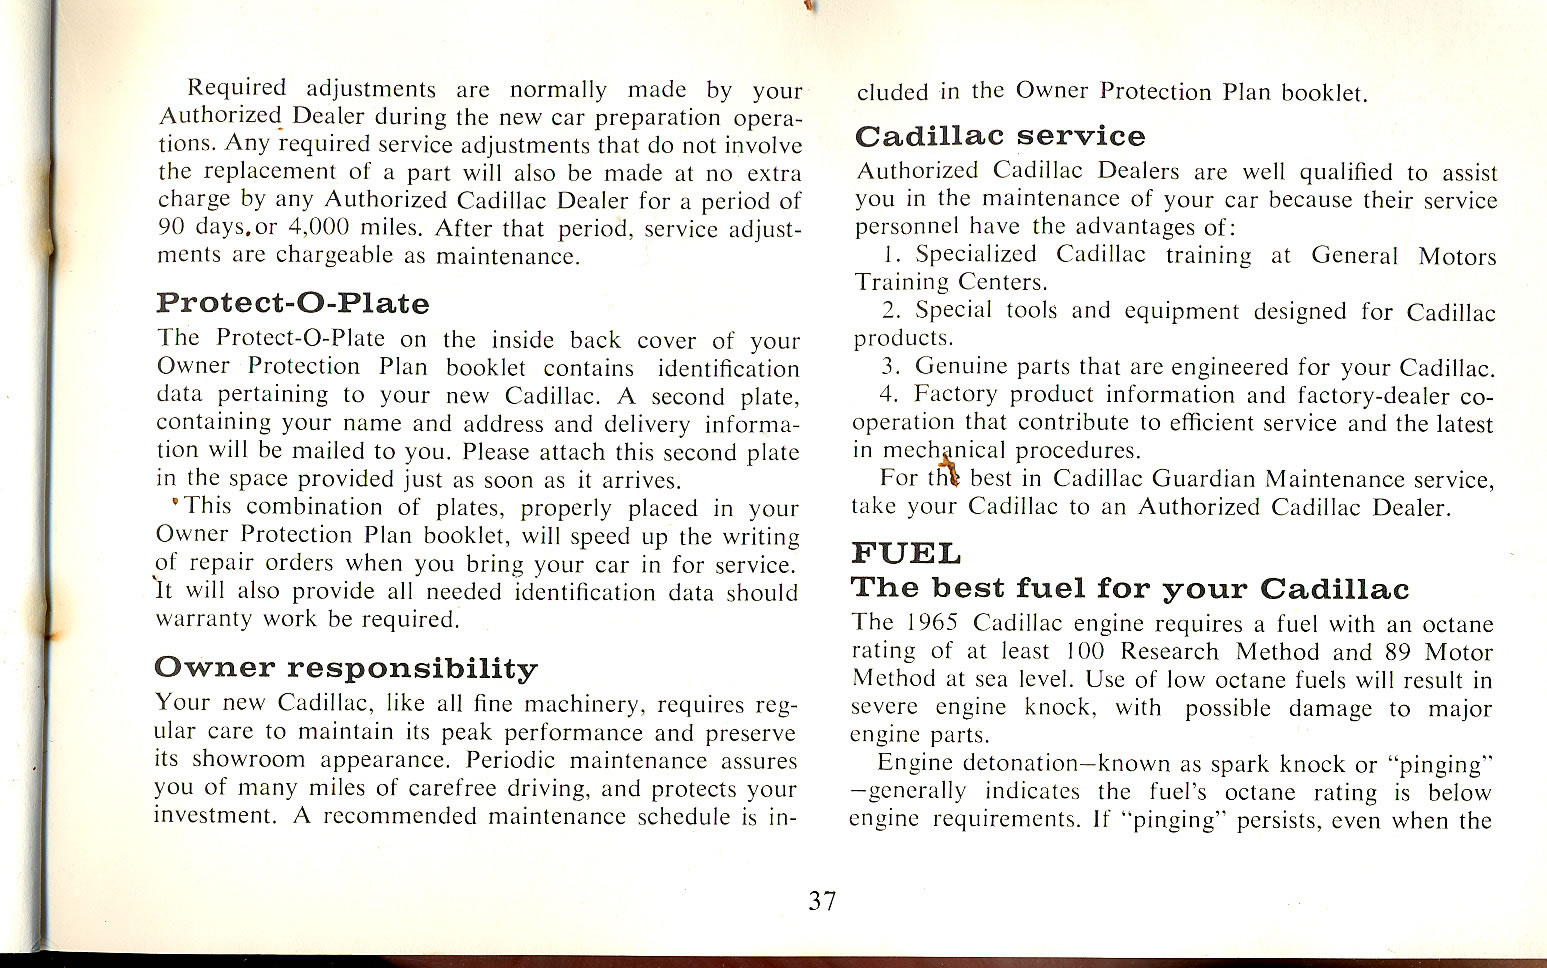 1965 Cadillac Manual-37